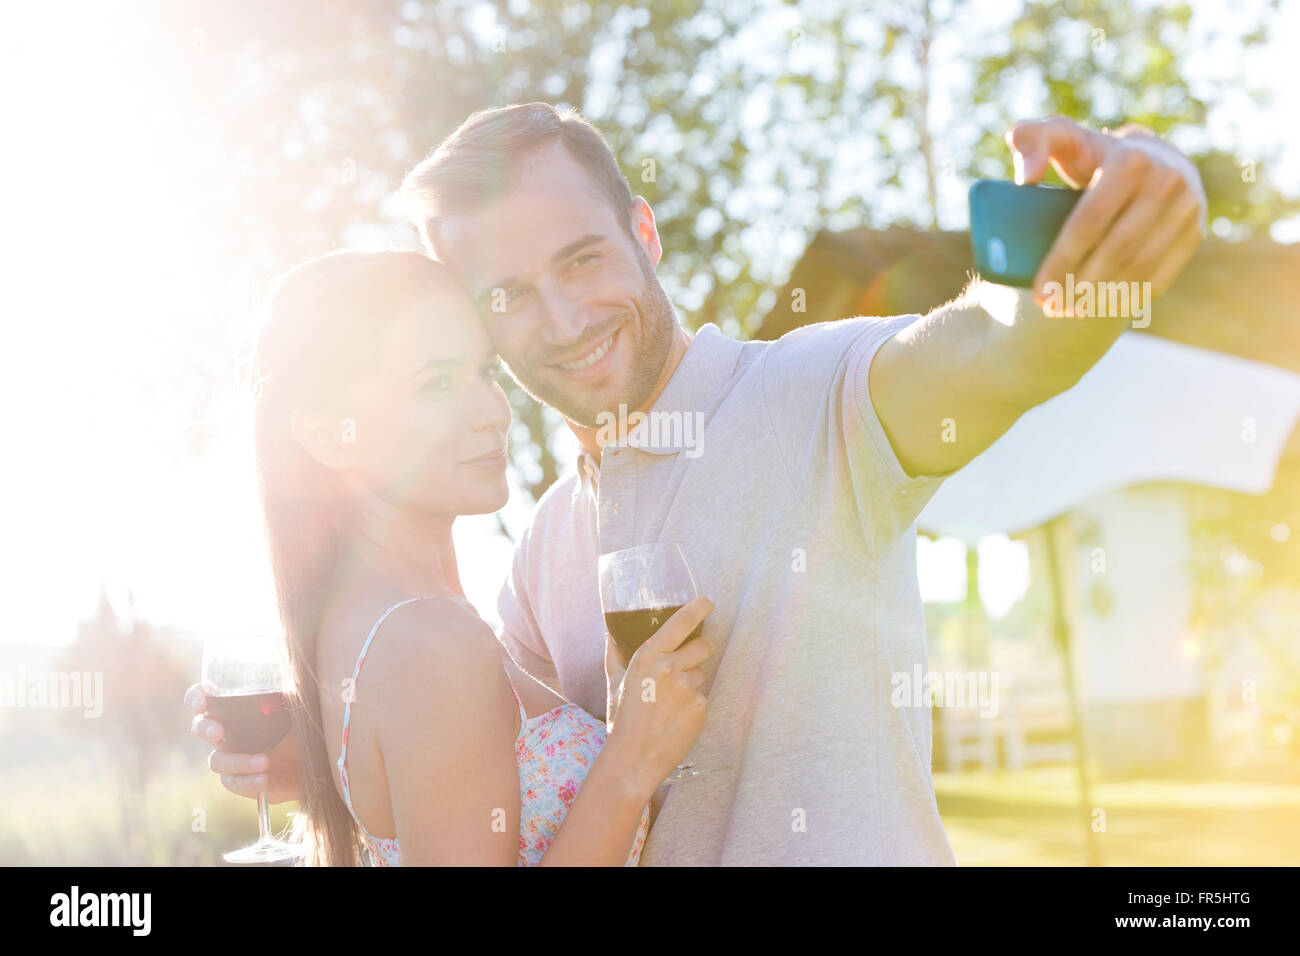 Coppia giovane con vino prendendo selfie nel cortile soleggiato Foto Stock